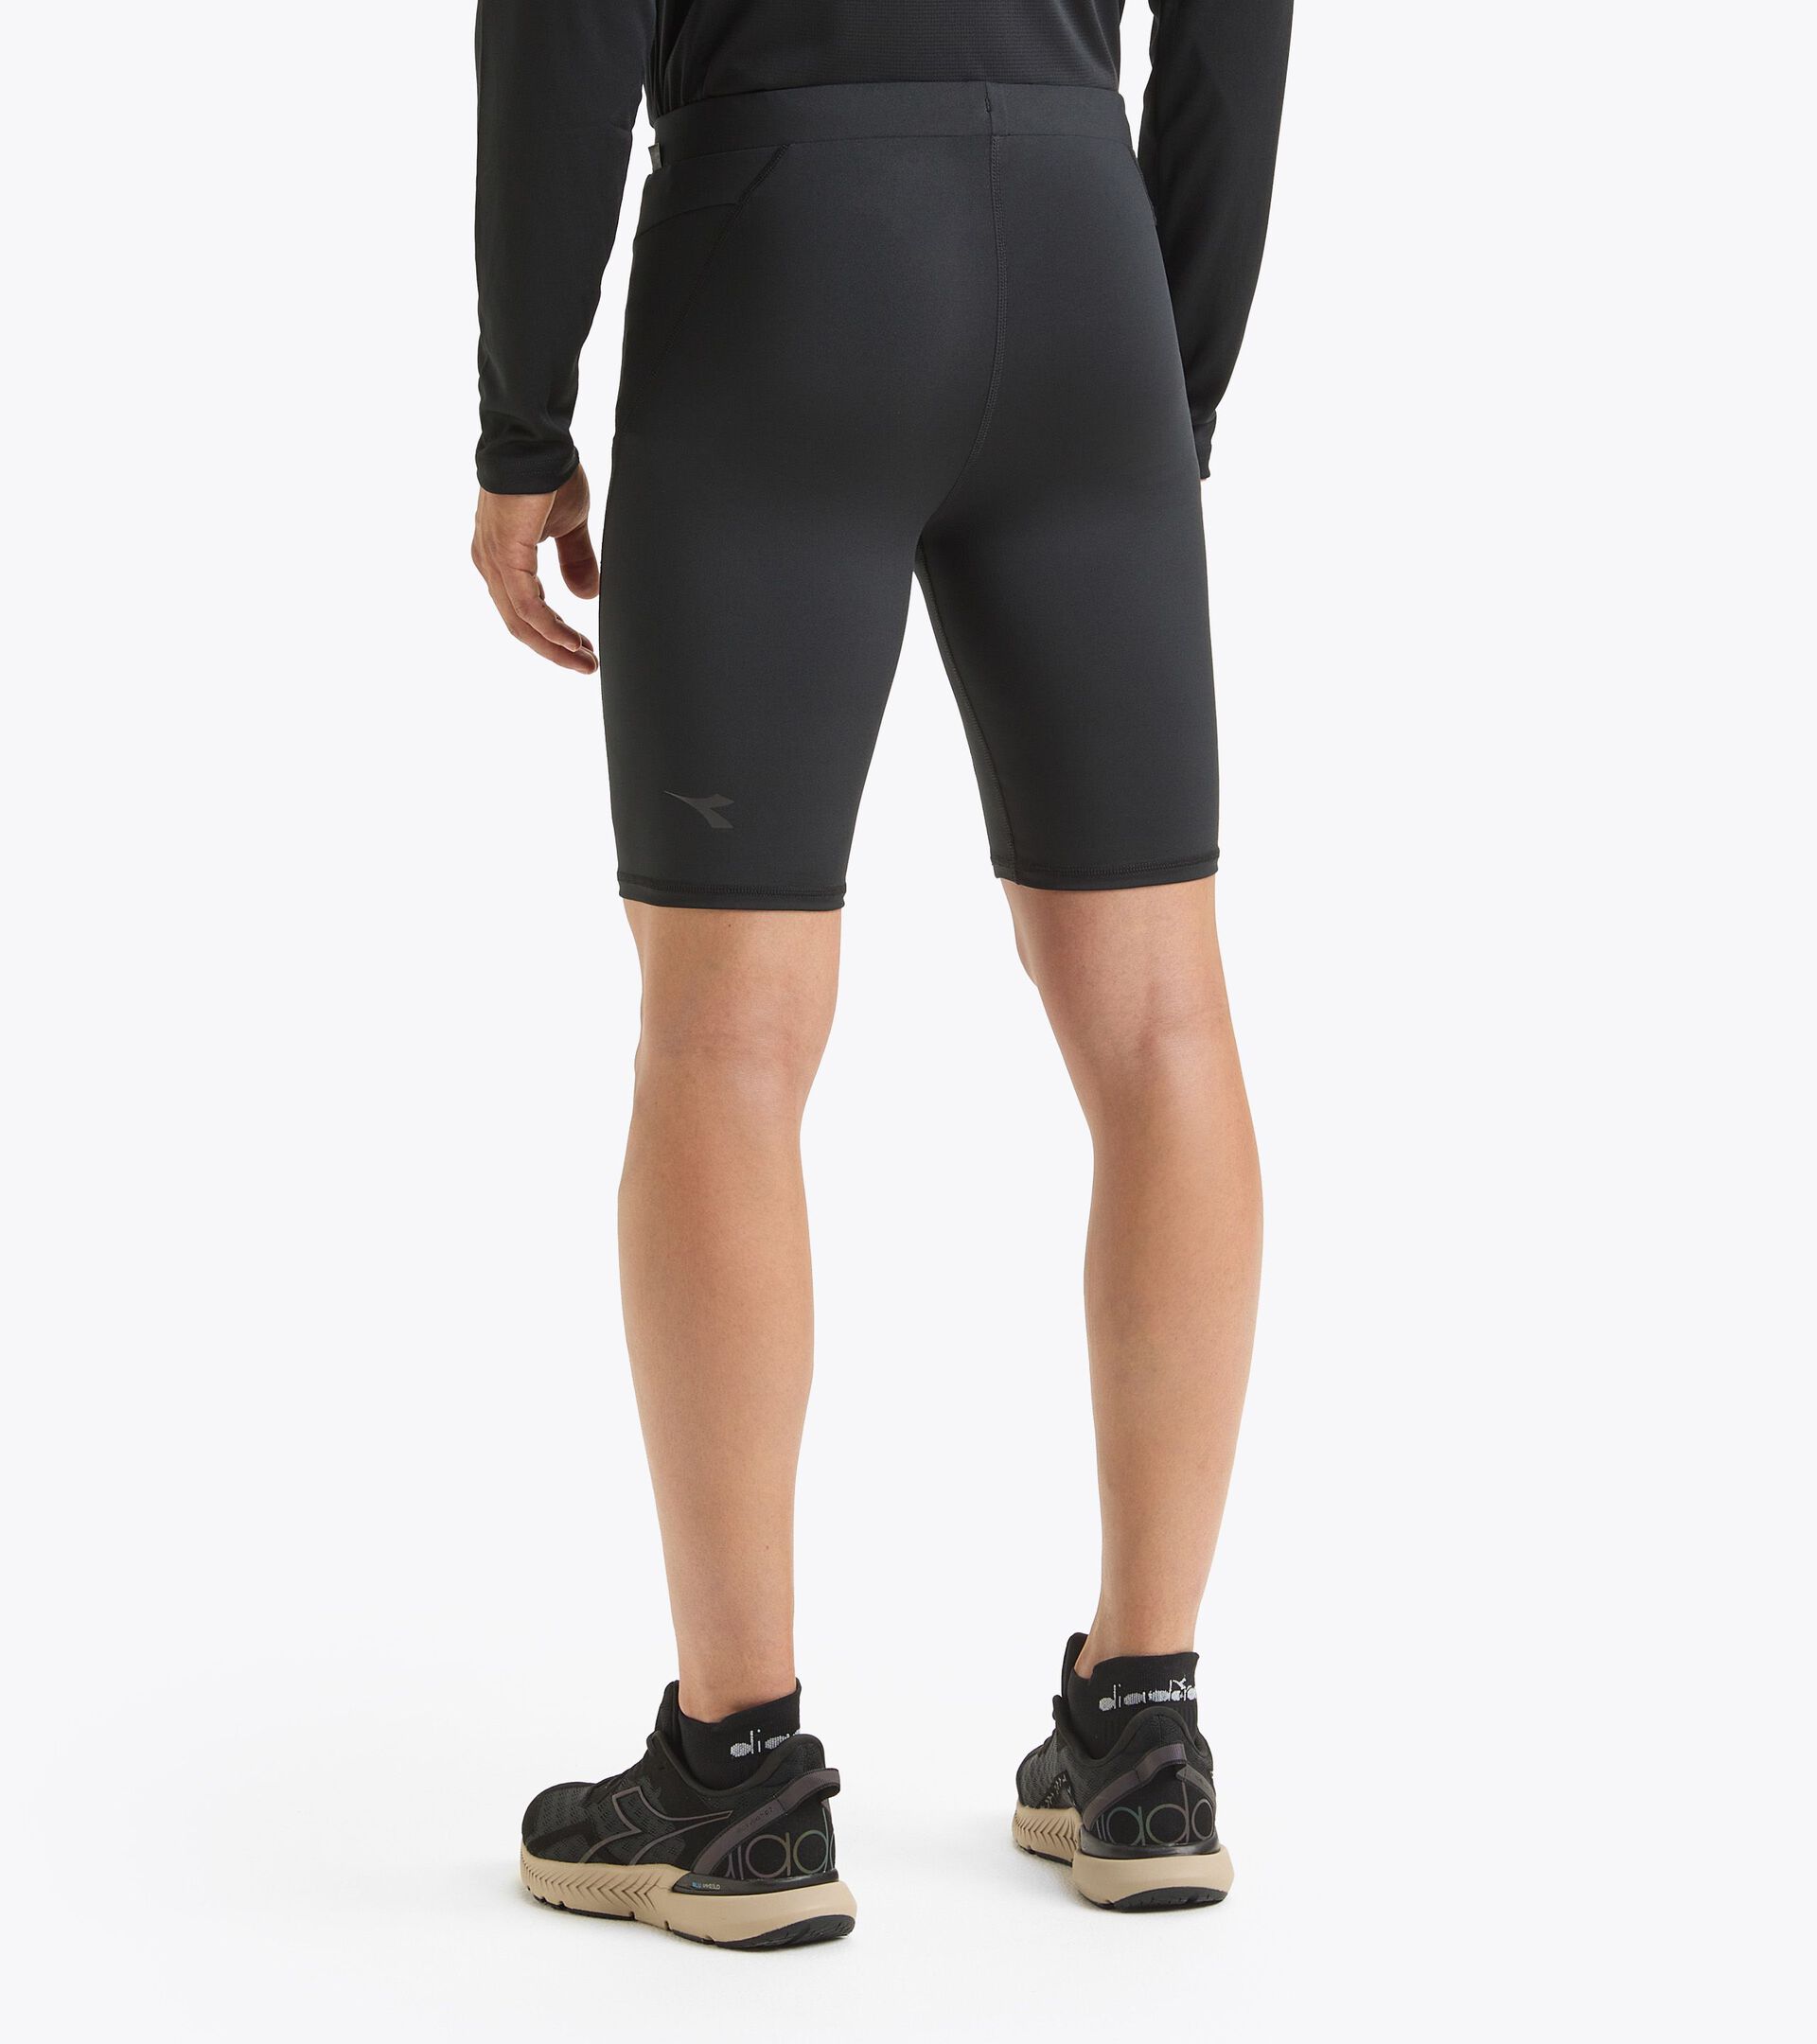 Running shorts - Men SHORT TIGHTS BLACK - Diadora